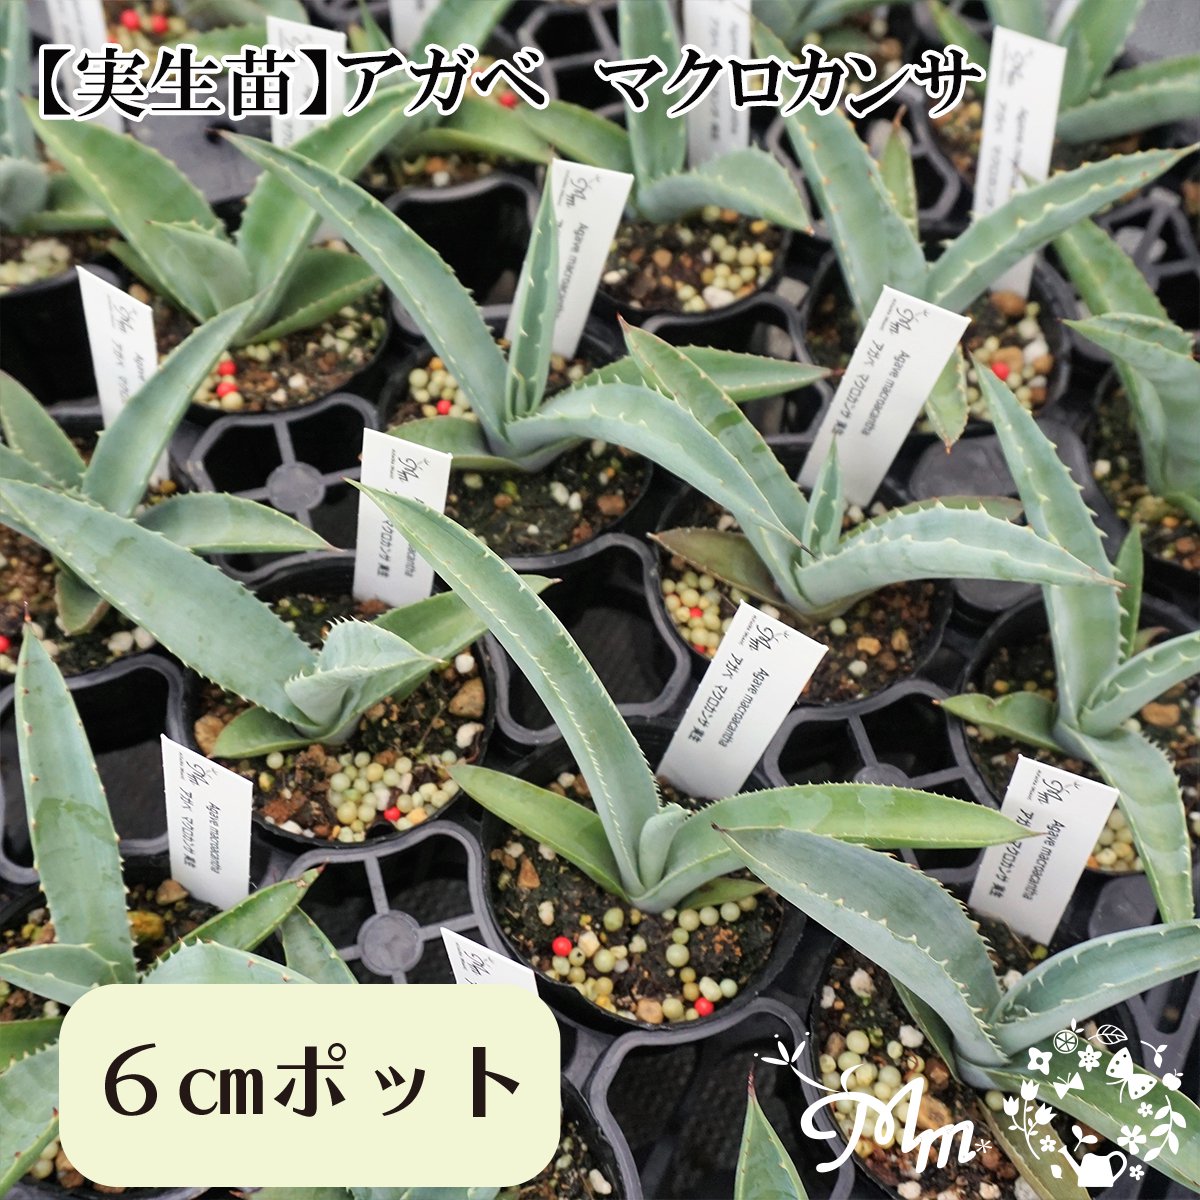 【実生苗(実生株)】Agave macroacantha(アガベ オマクロカンサ)6�ポット苗